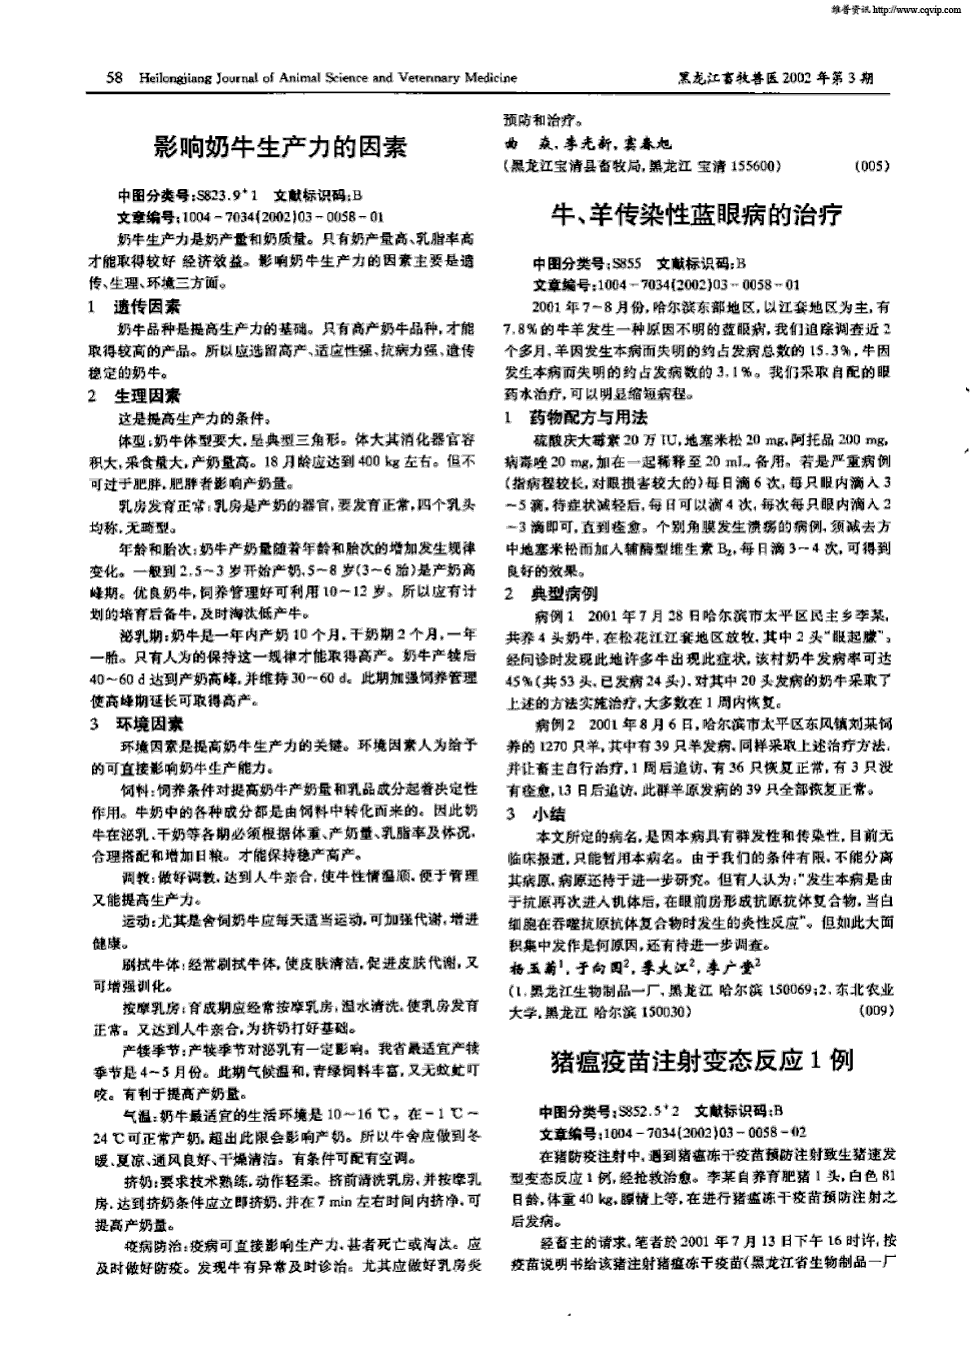 期刊牛,羊传染性蓝眼病的治疗被引量:1      2001年7～8月份,哈尔滨